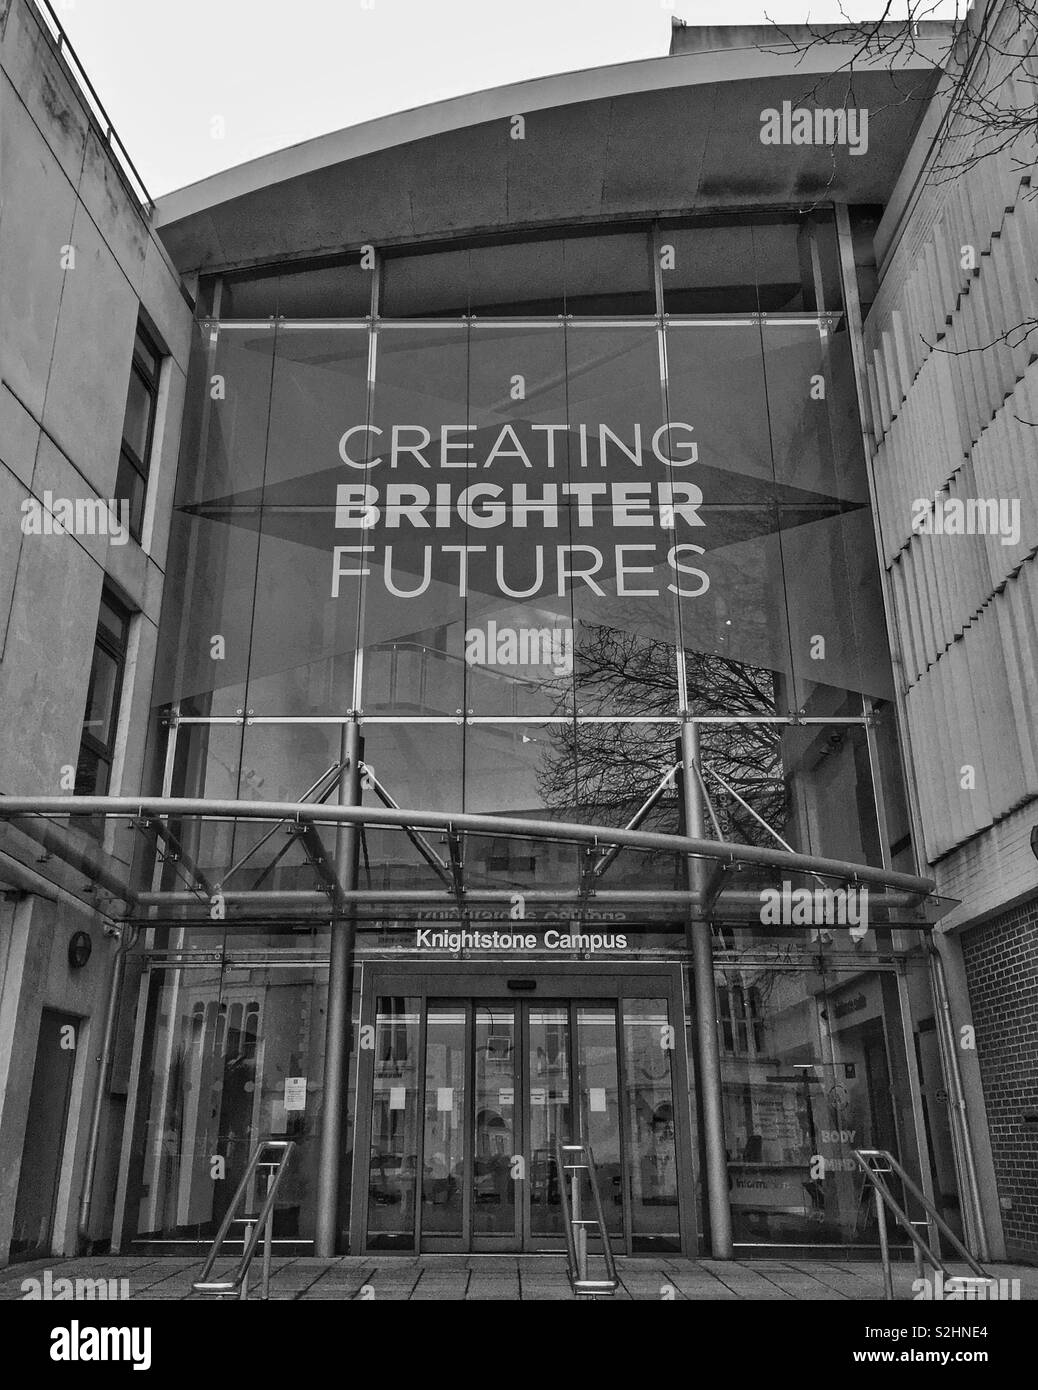 L'ingresso al Campus Knightstone di Weston College in Weston-super-Mare, Regno Unito con un banner recanti lo slogan "Creazione di più luminoso" Futures Foto Stock